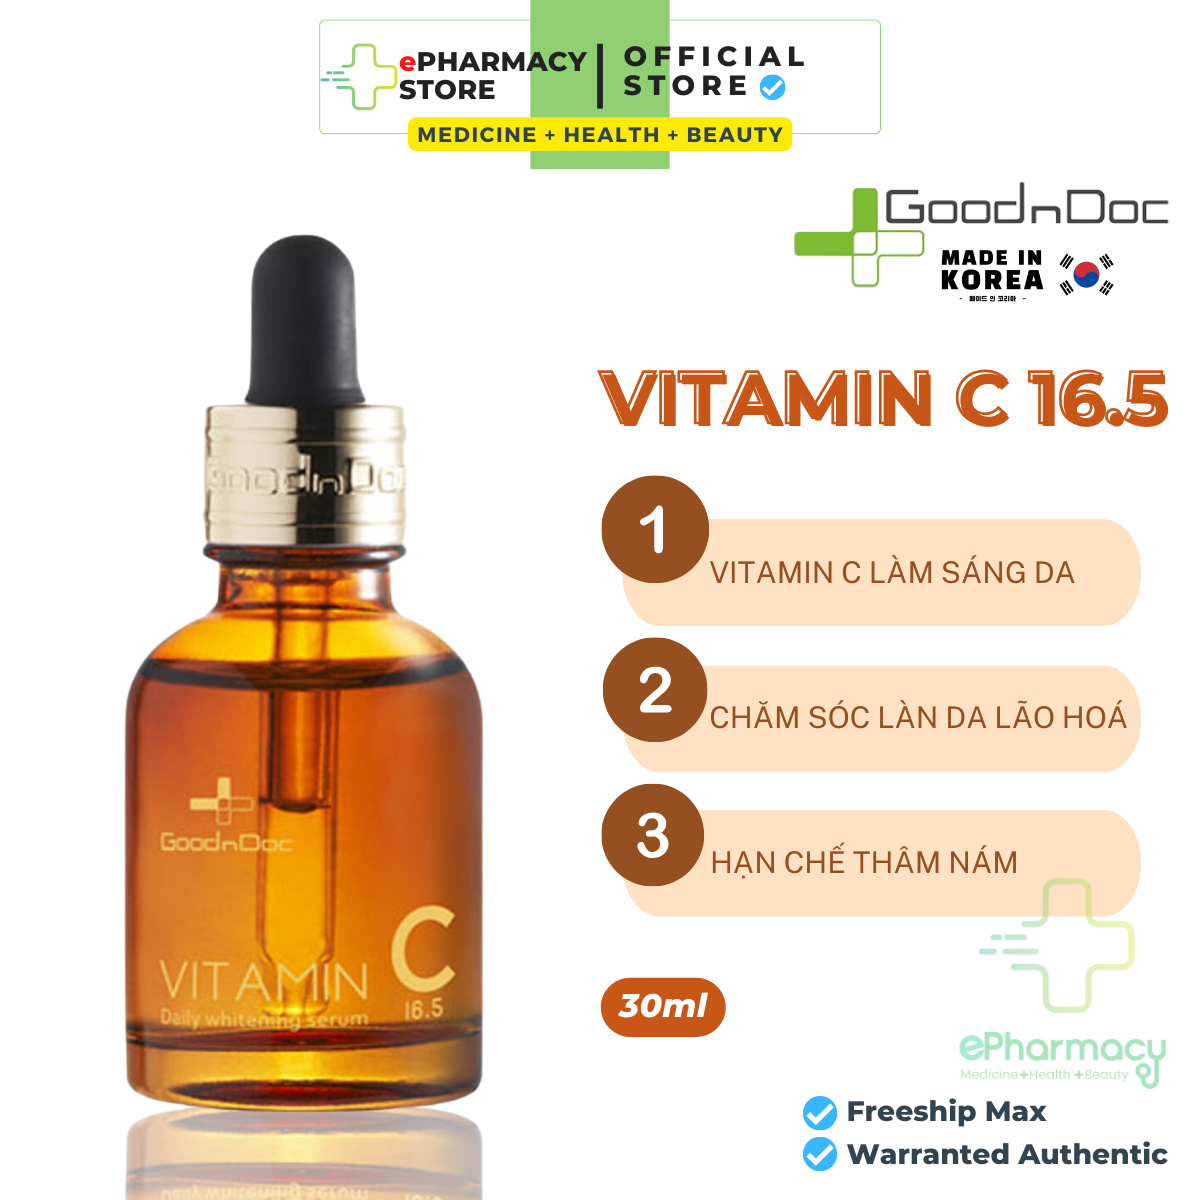 GOODNDOC Serum Vitamin C 16.5 Daily Whitening Tinh chất giảm thâm nám